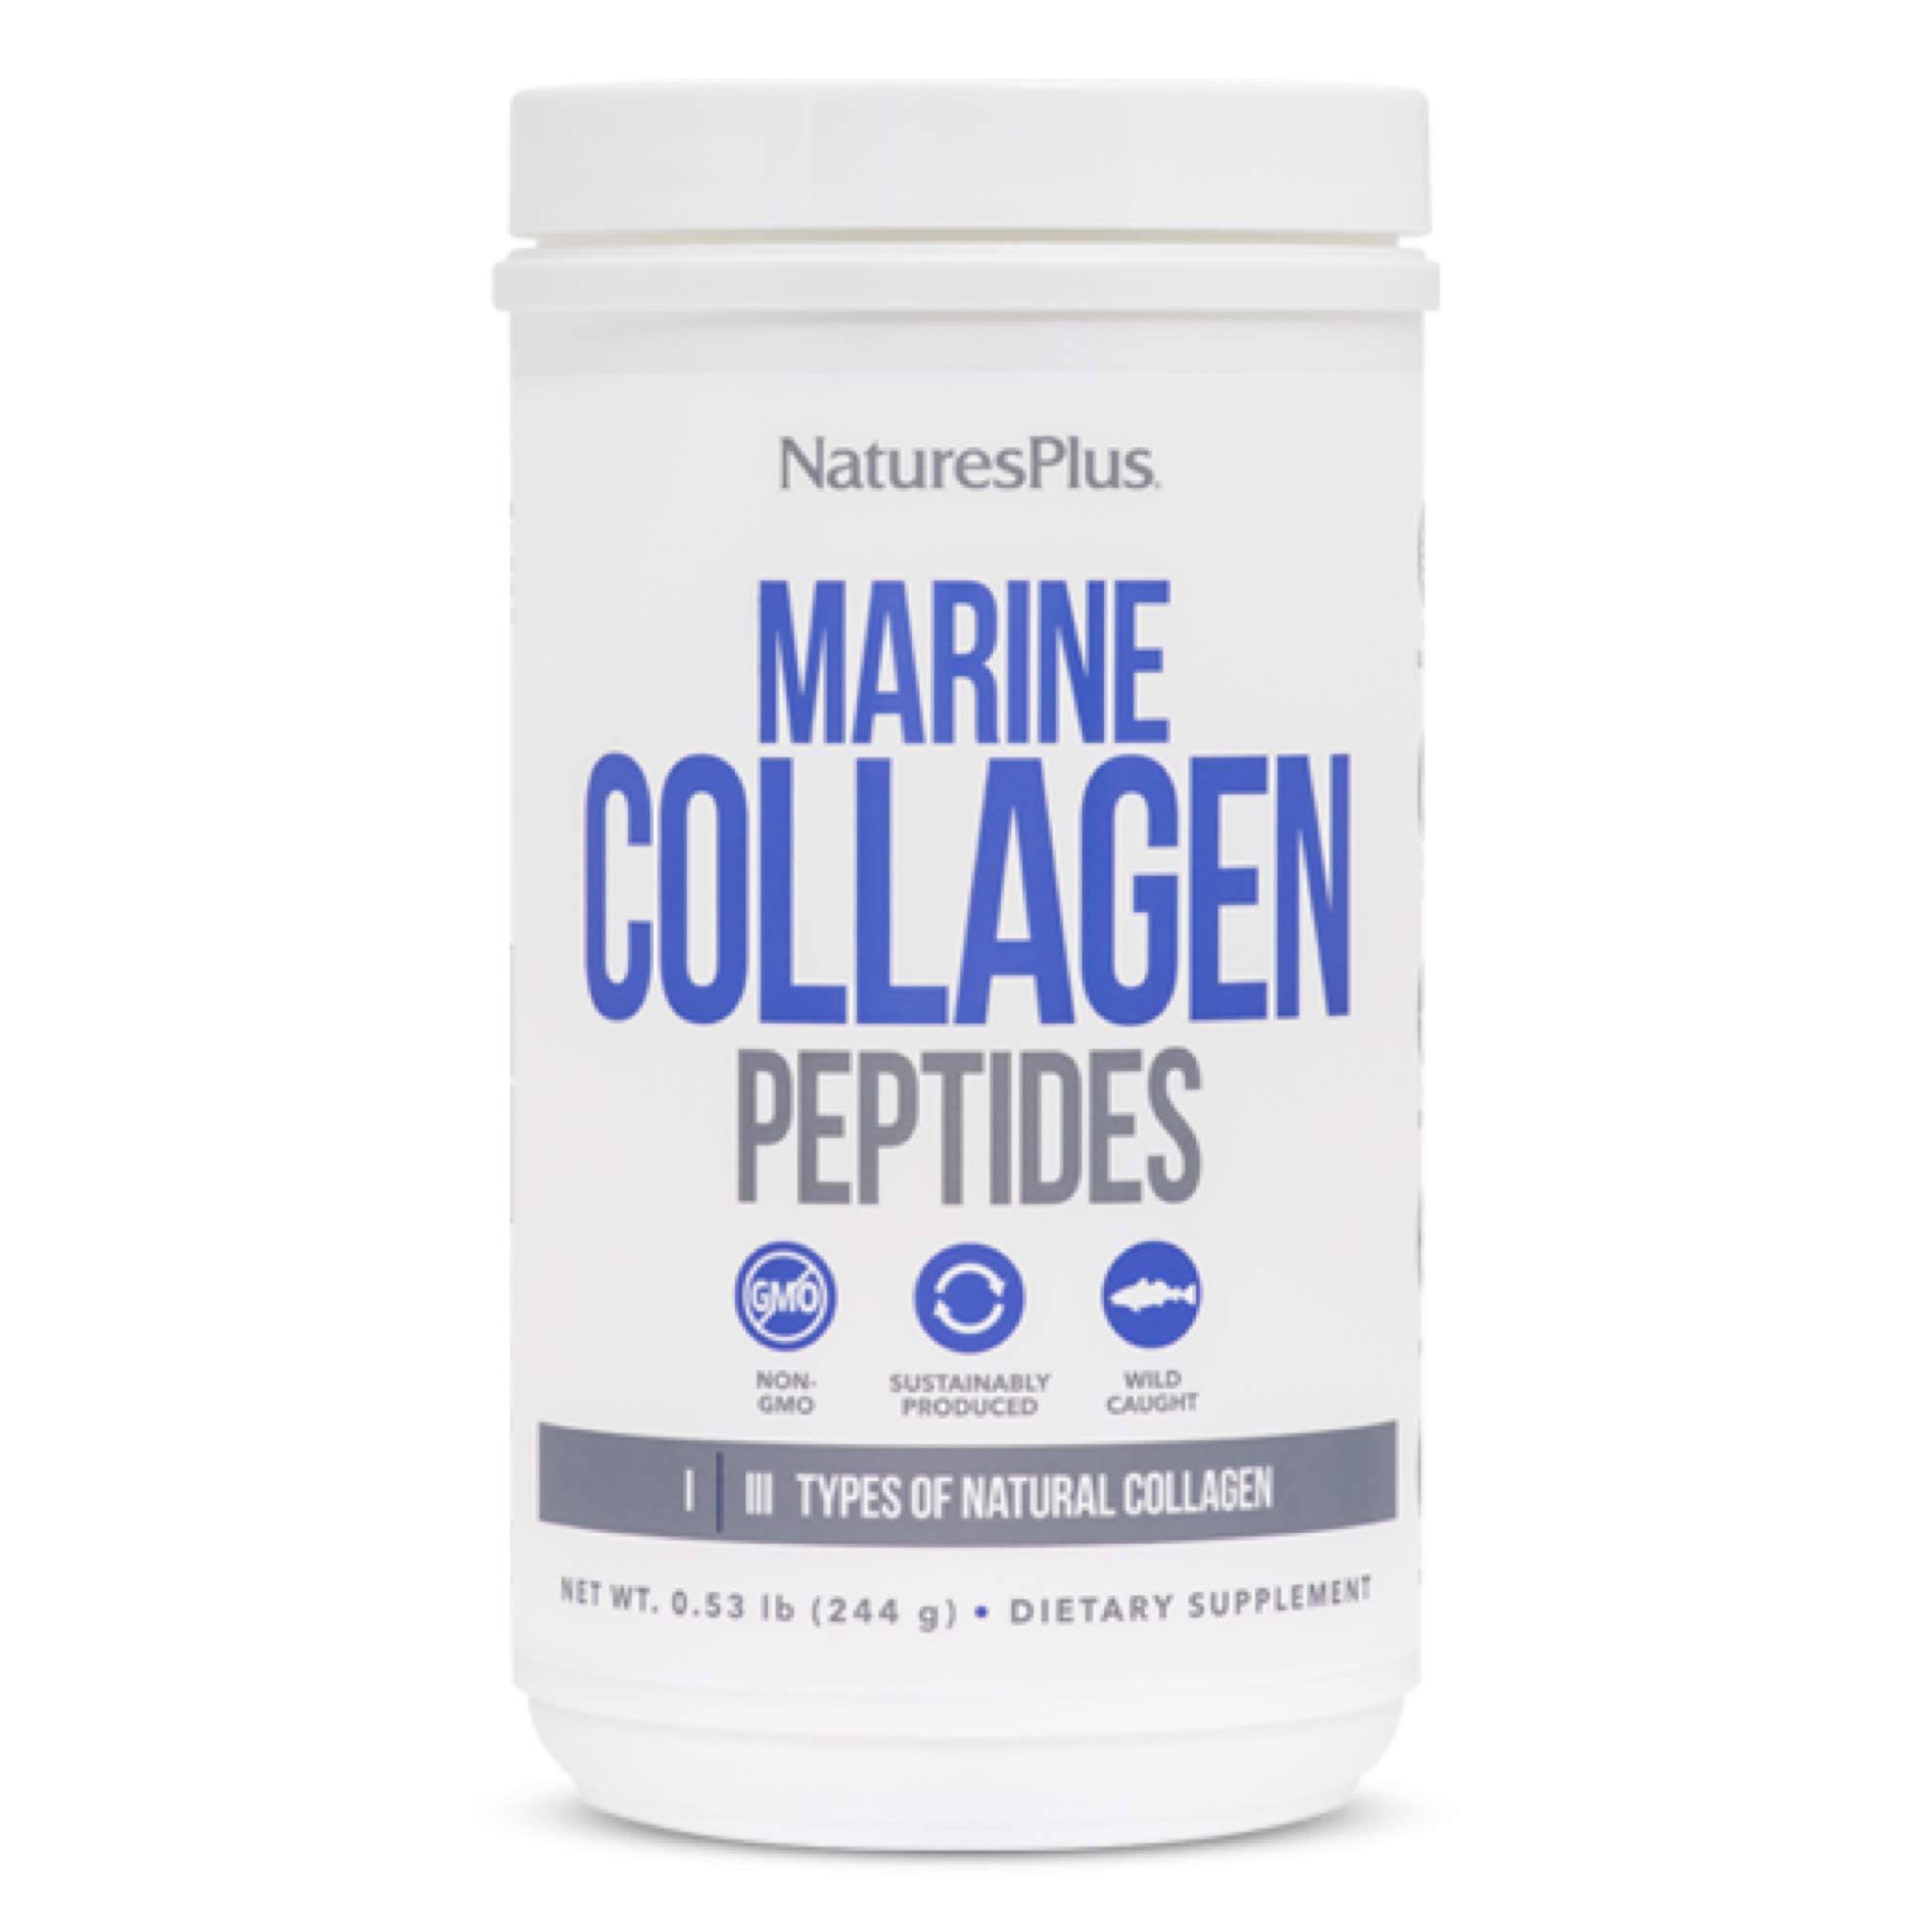 NaturesPlus, Marine Collagen Peptides, 0.53 lb (244 g)